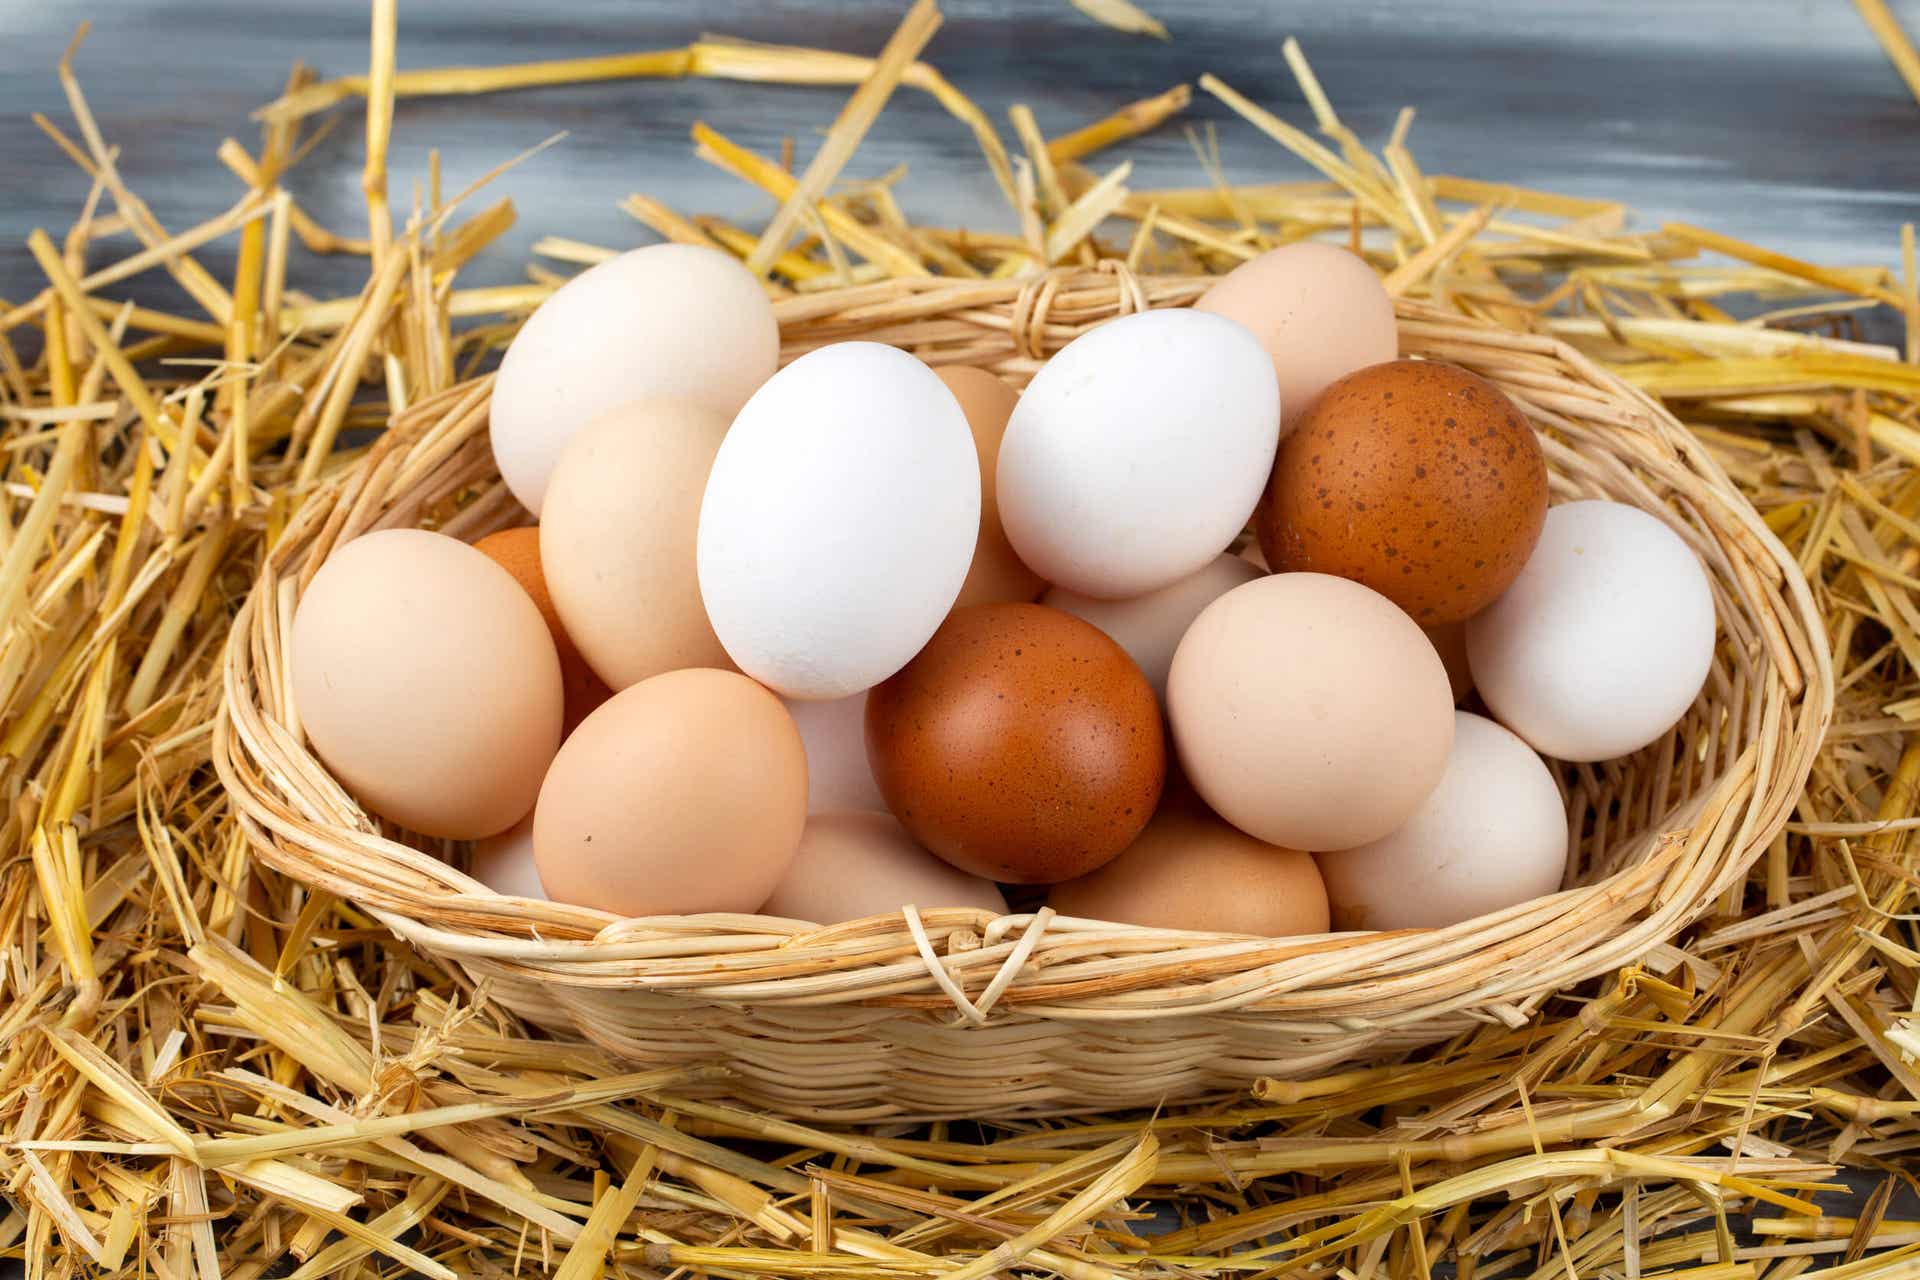 Pastorizzare le uova serve a eliminare i germi presenti sul guscio.